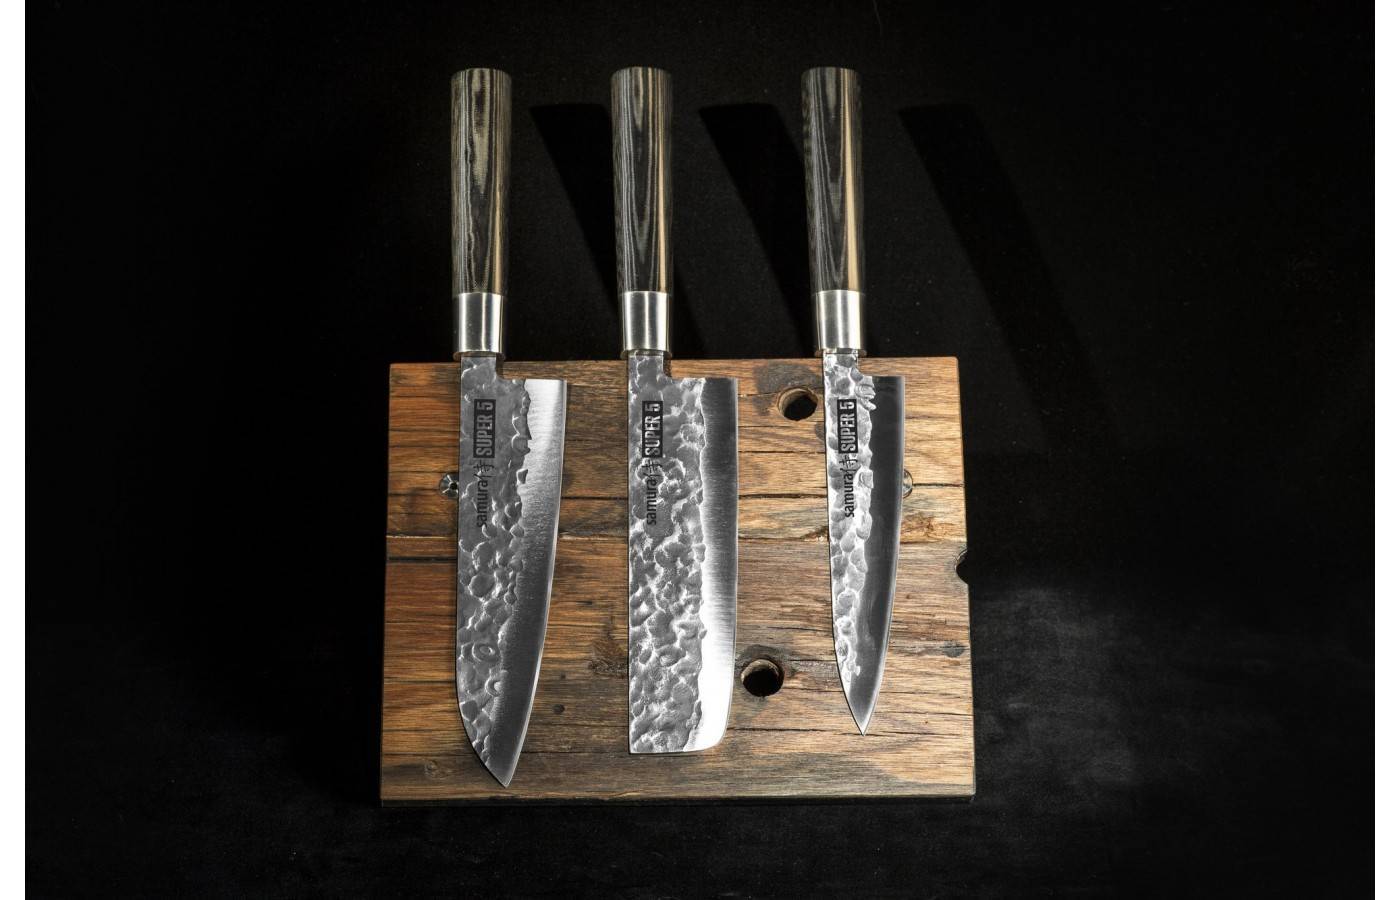 Лучшие японские ножи накири со всеми достоинствами и недостатками.